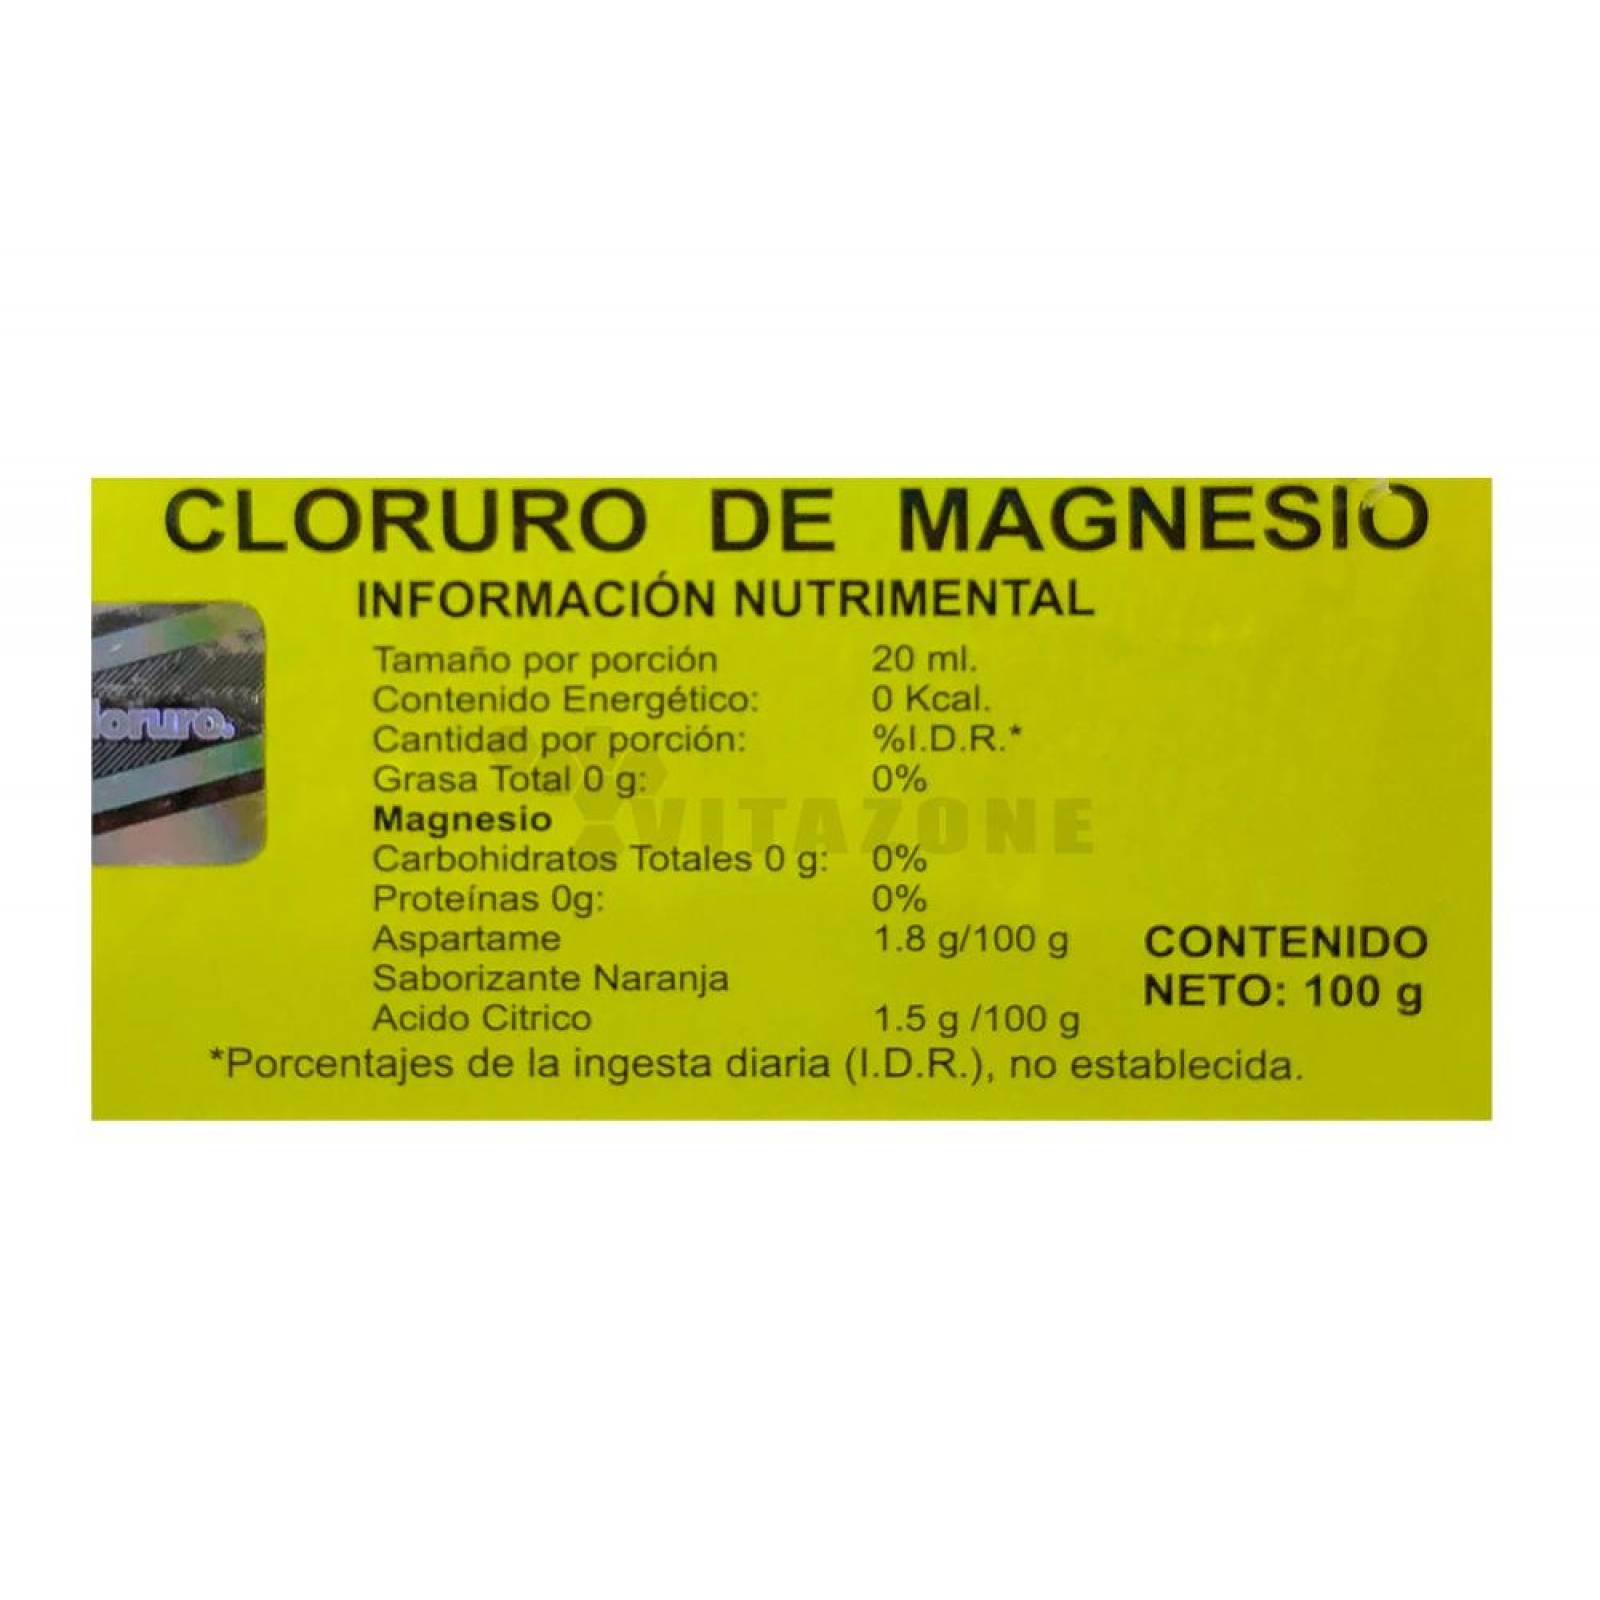 Cloruro De Magnesio En Polvo Sabor Naranja 100 grs Maxicloruro. 